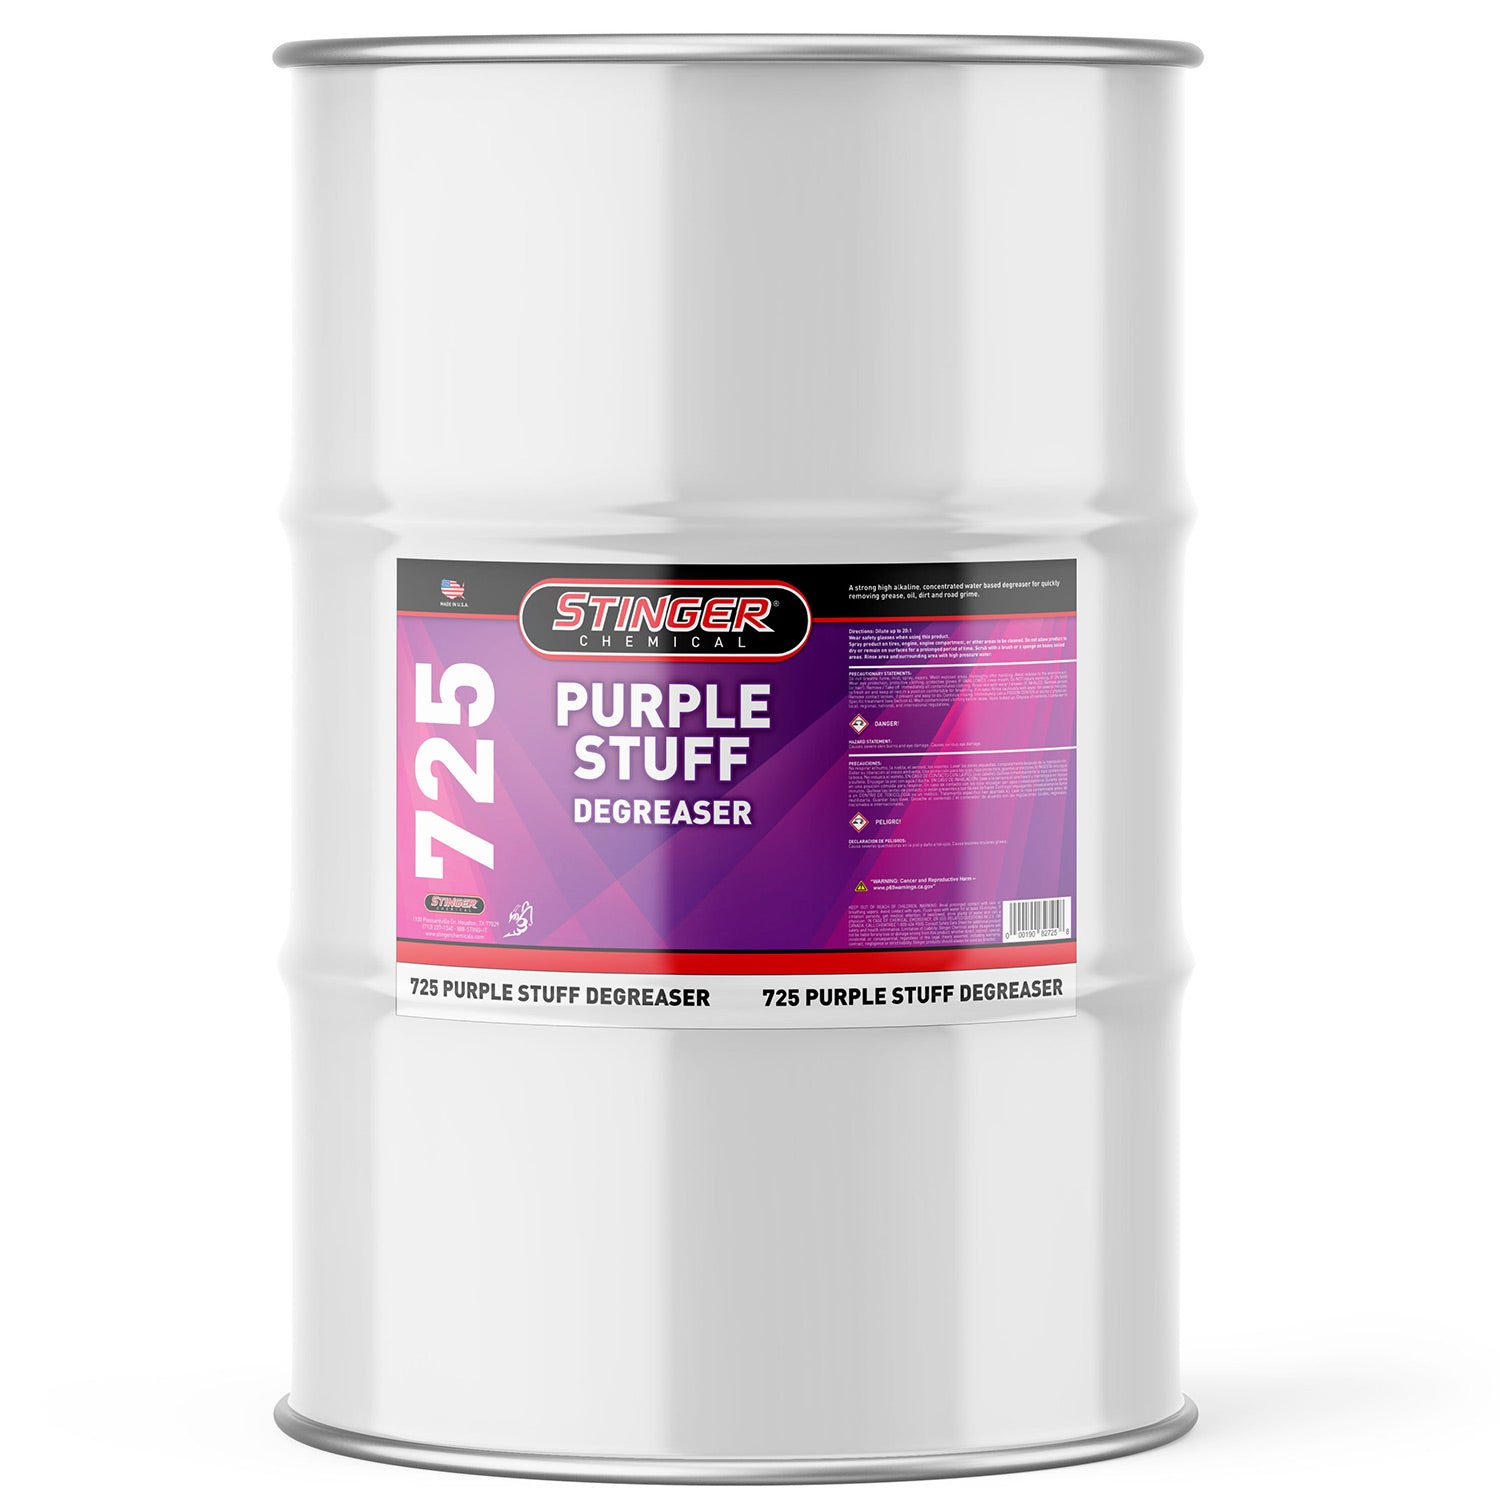 Stinger Chemical Purple Stuff Degreaser